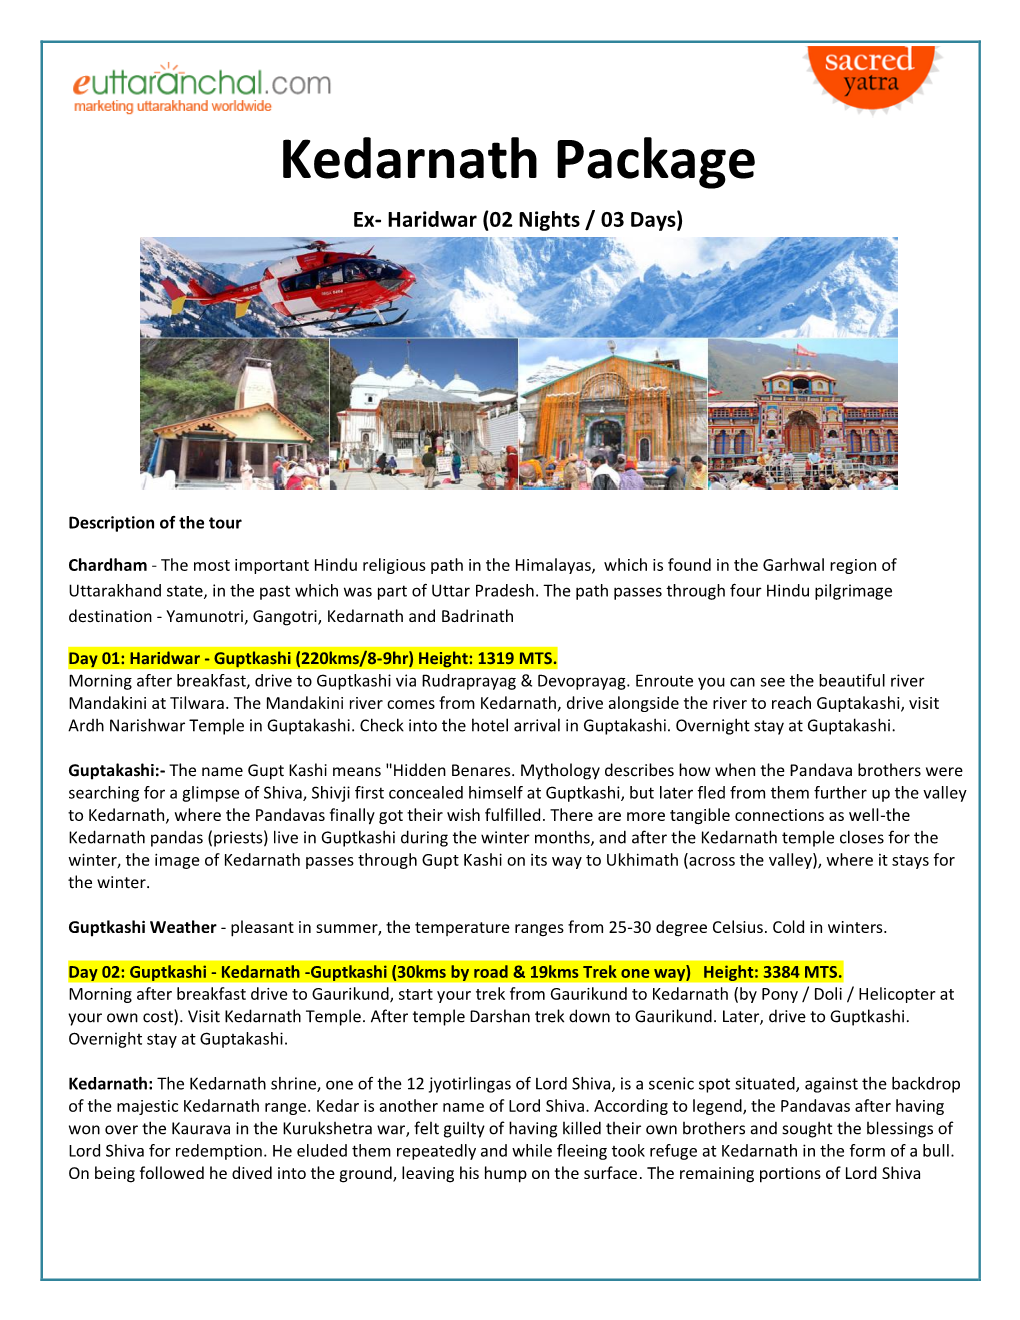 Kedarnath-Package-Ex